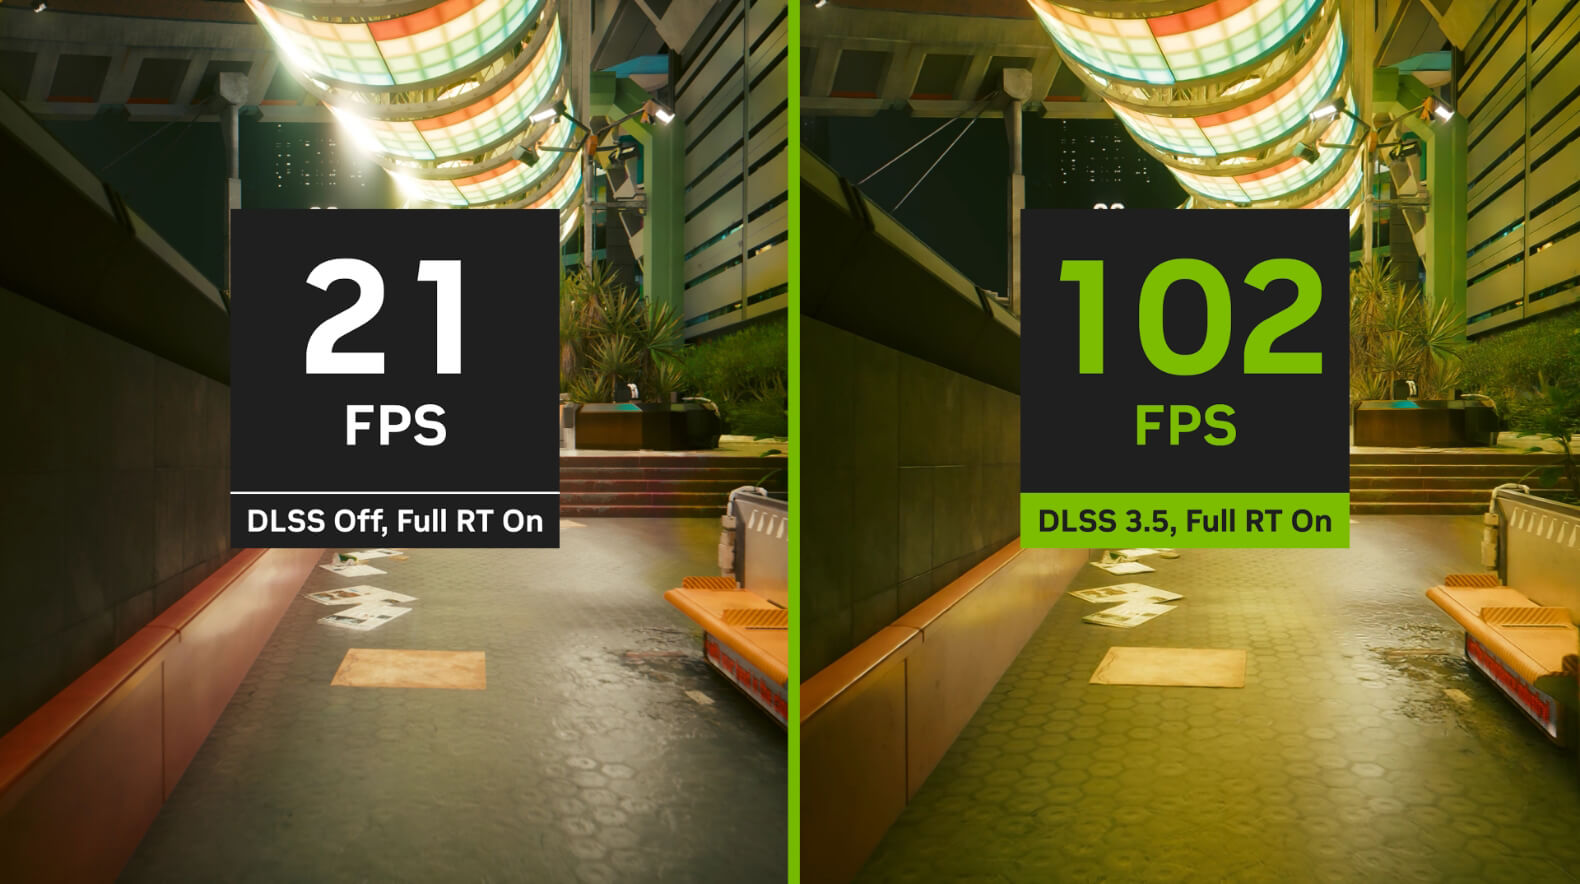 gra Cyberpunk – porównanie wydajności: obraz bez NVIDIA DLSS po lewej stronie, obraz z DLSS po prawej stronie